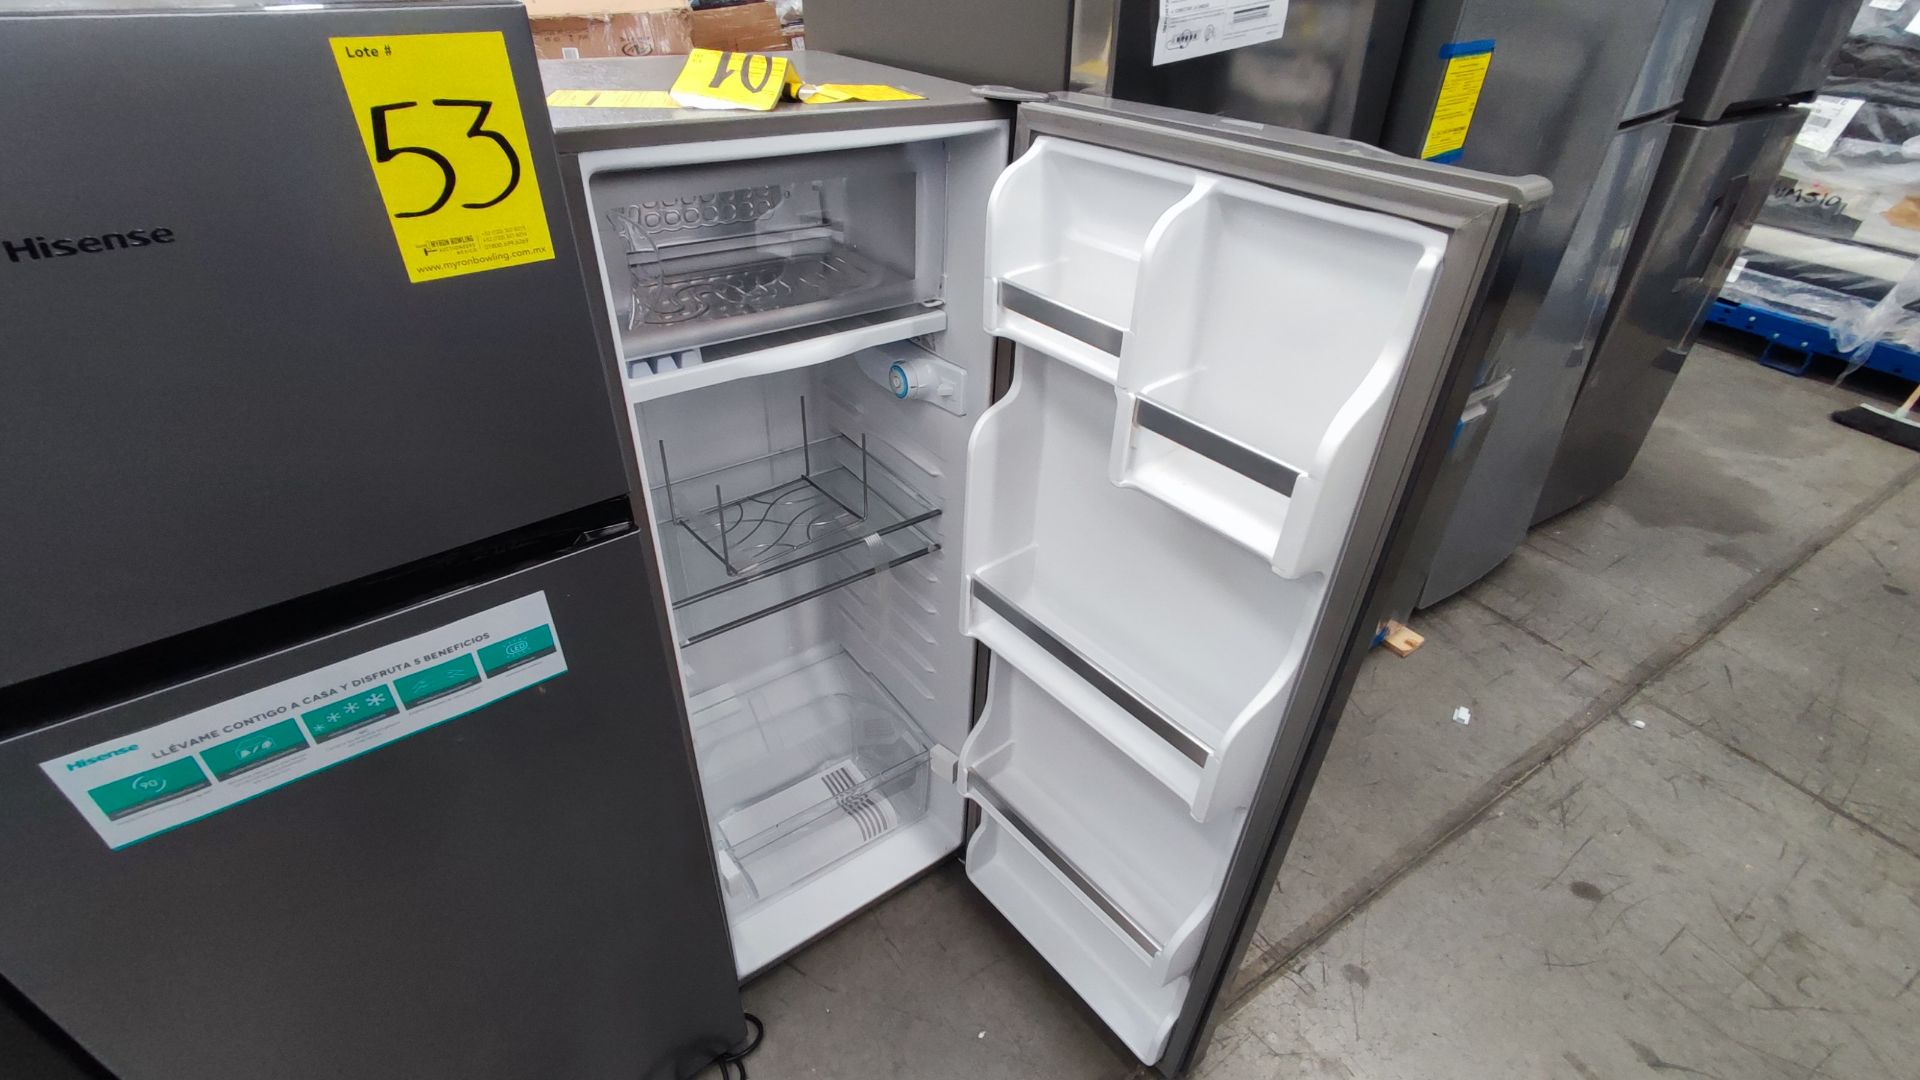 Lote de 2 Refrigeradores, Contiene; 1 Refrigerador Marca Hisense, Modelo BCYNY, Serie 1B0205Z0080JB - Image 4 of 11